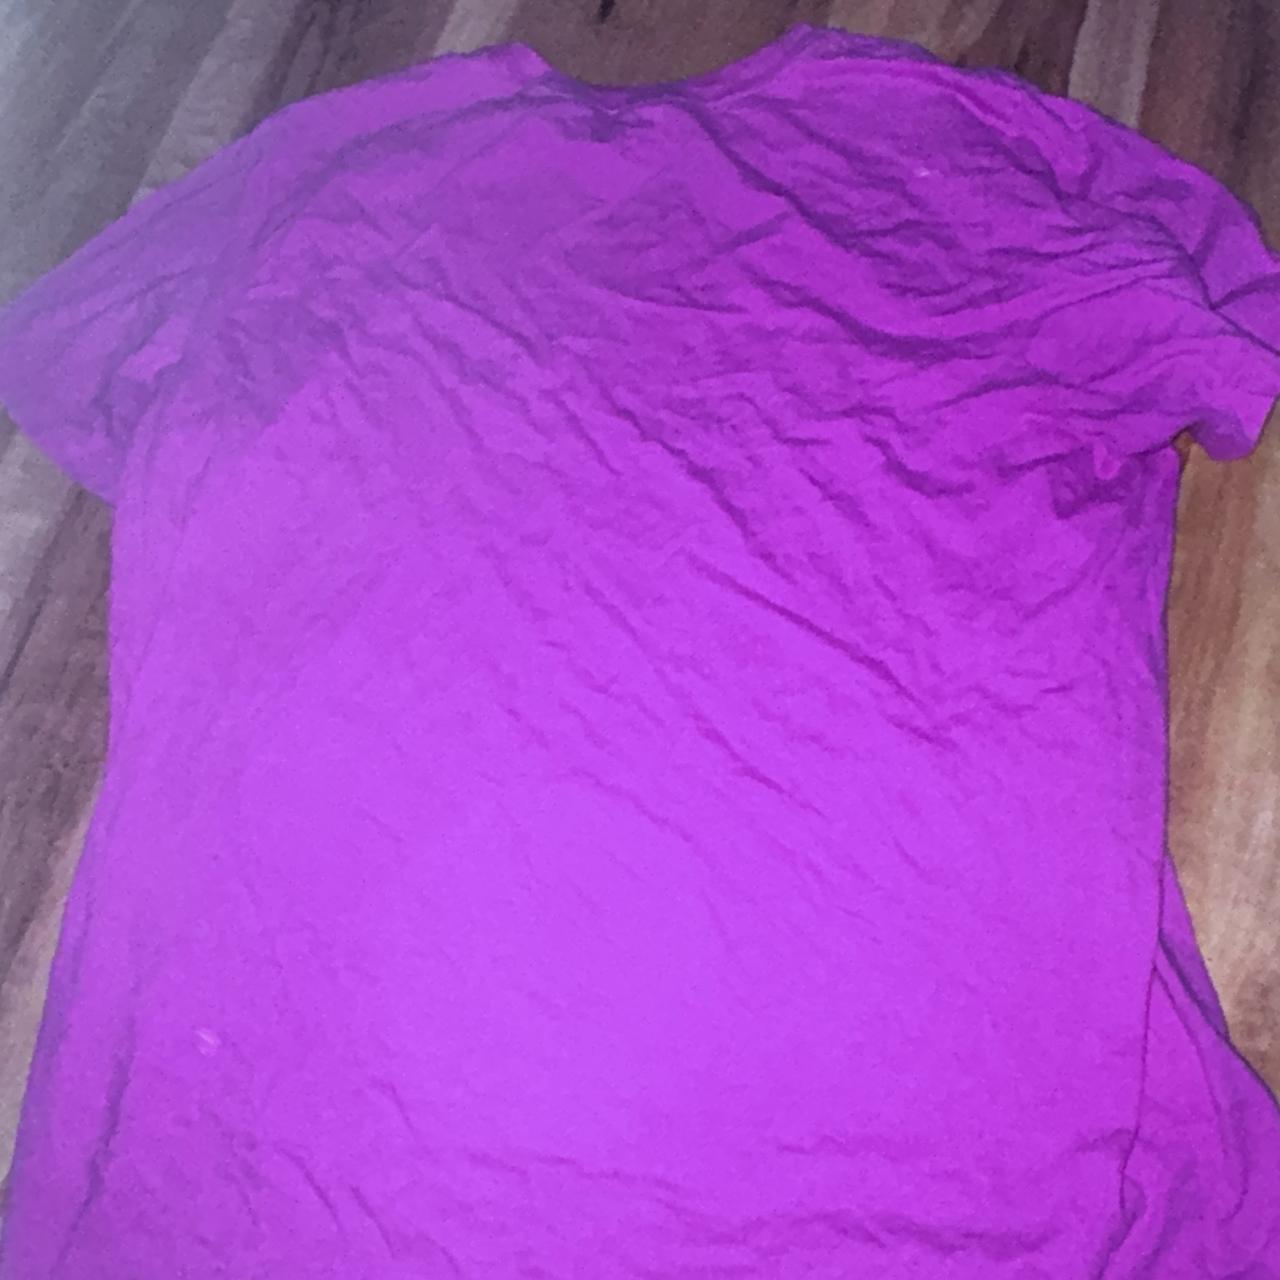 Large pink Nike t-shirt, worn - Depop